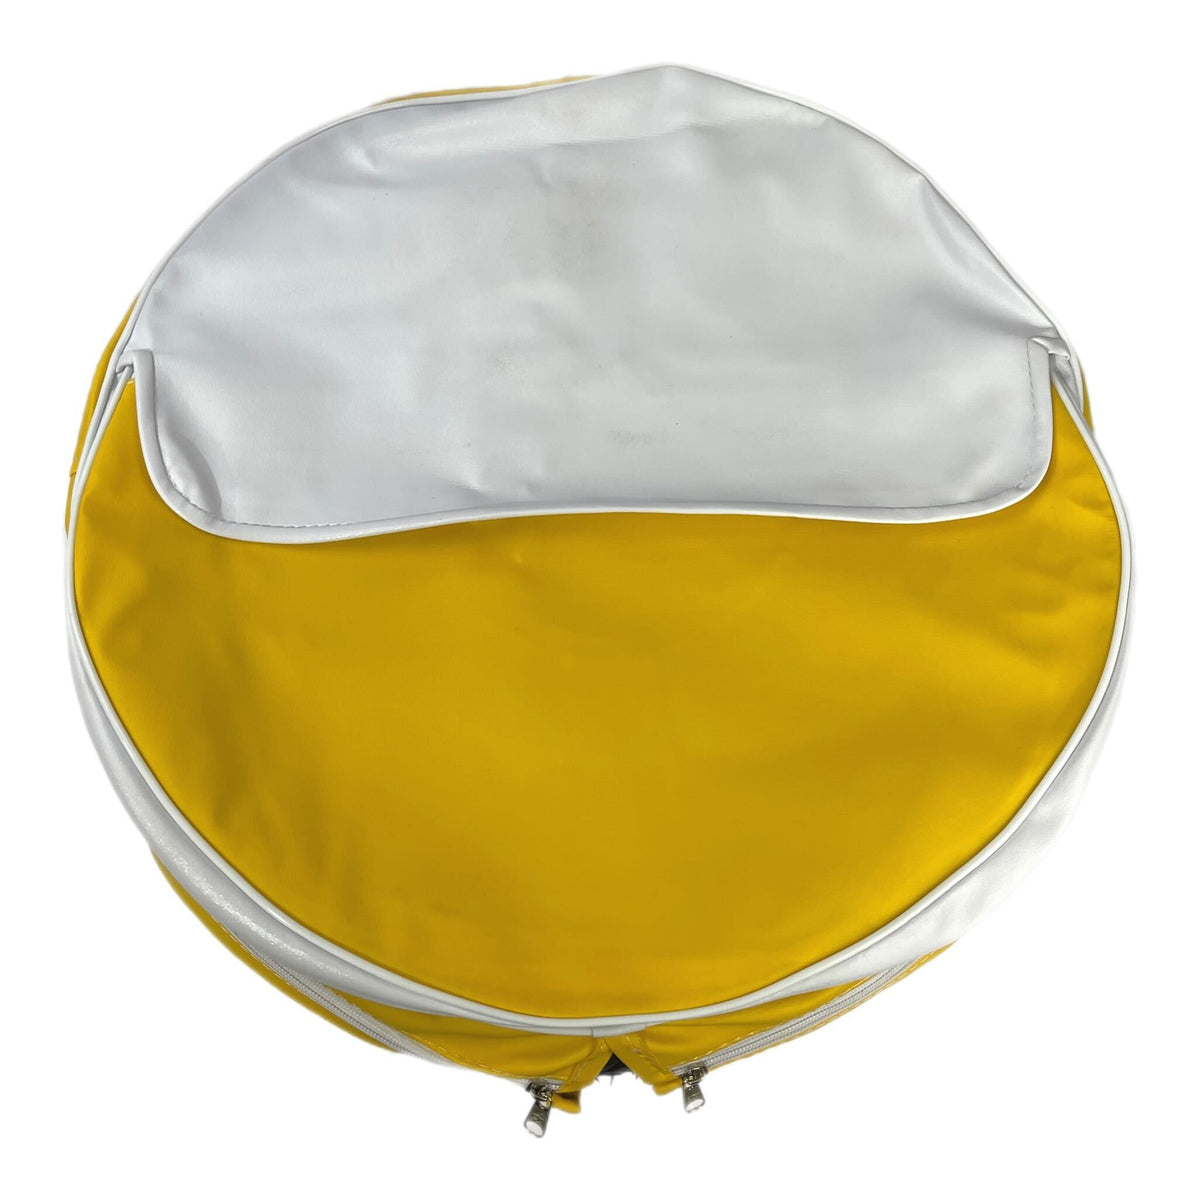 Vespa Lambretta Scooter Yellow & White Spare Wheel Cover With Pocket 10"